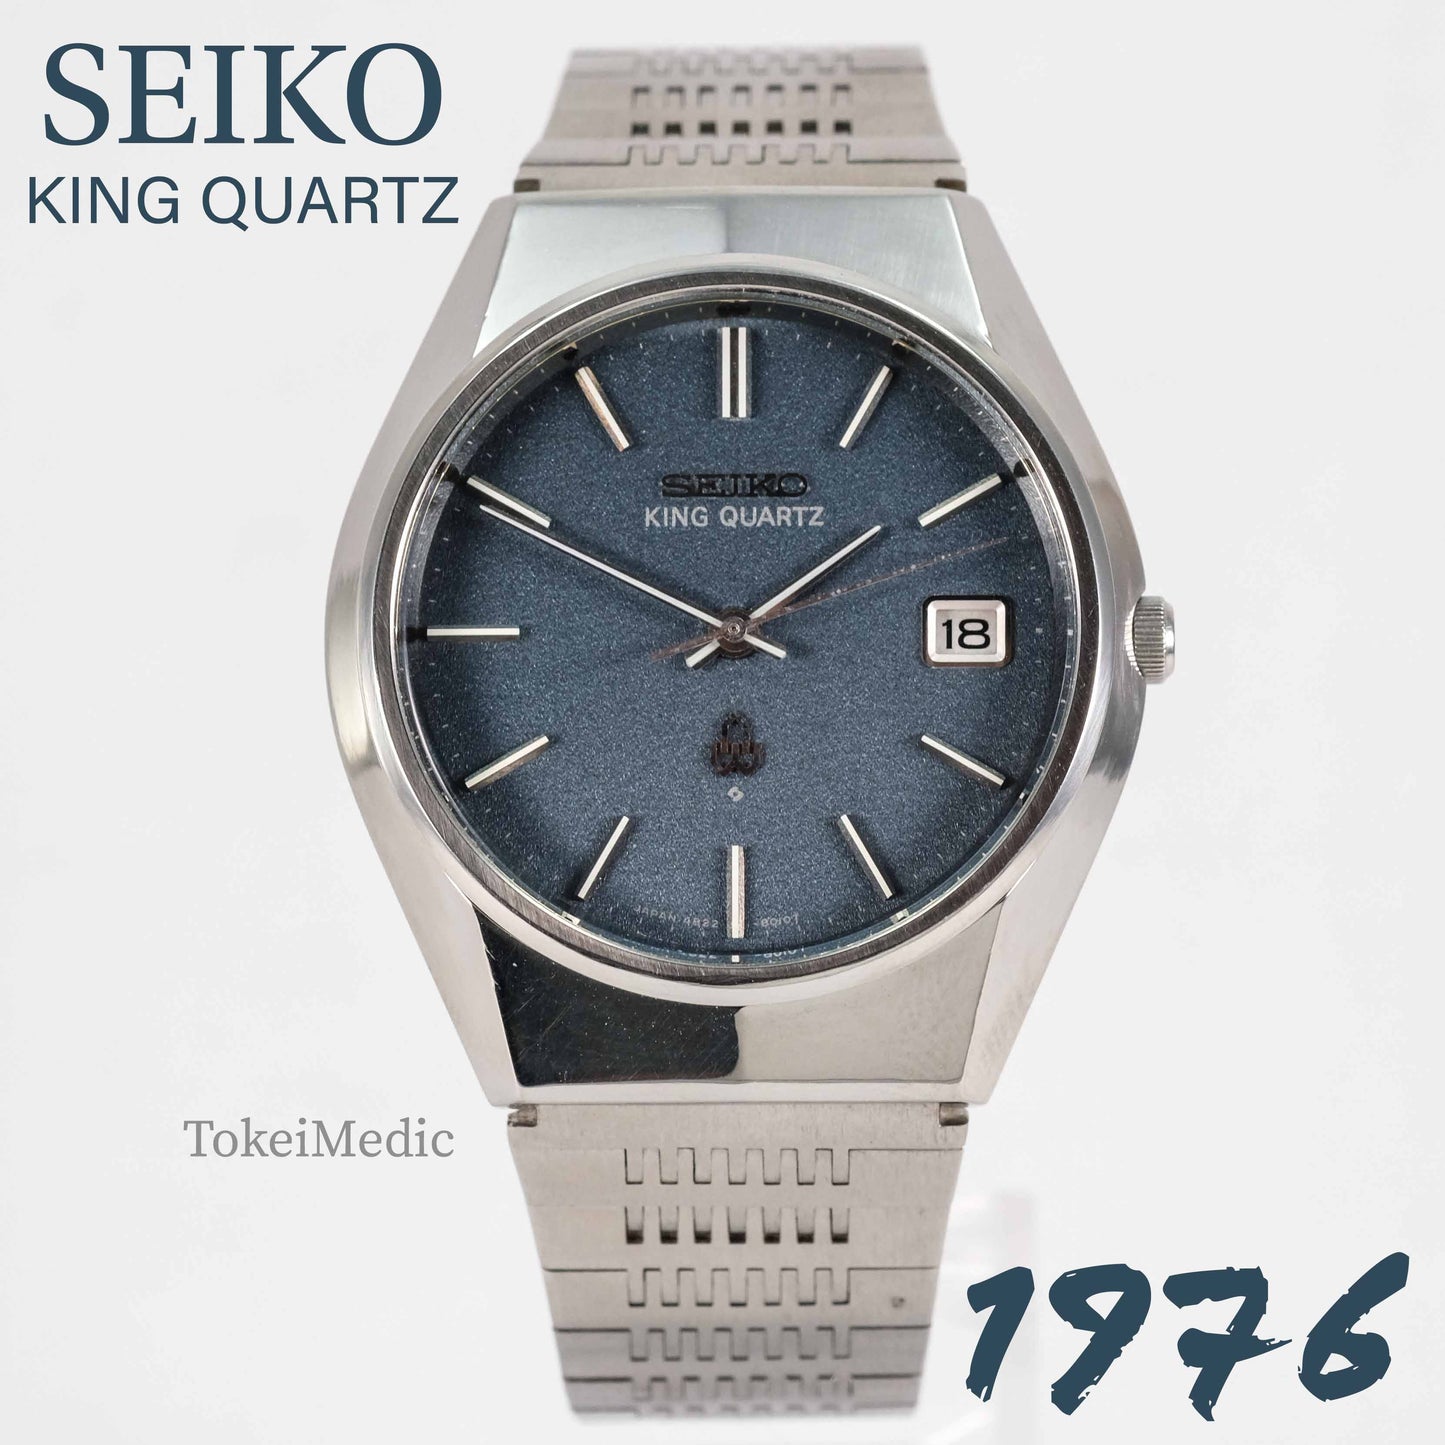 1976 Seiko King Quartz 4822-8010